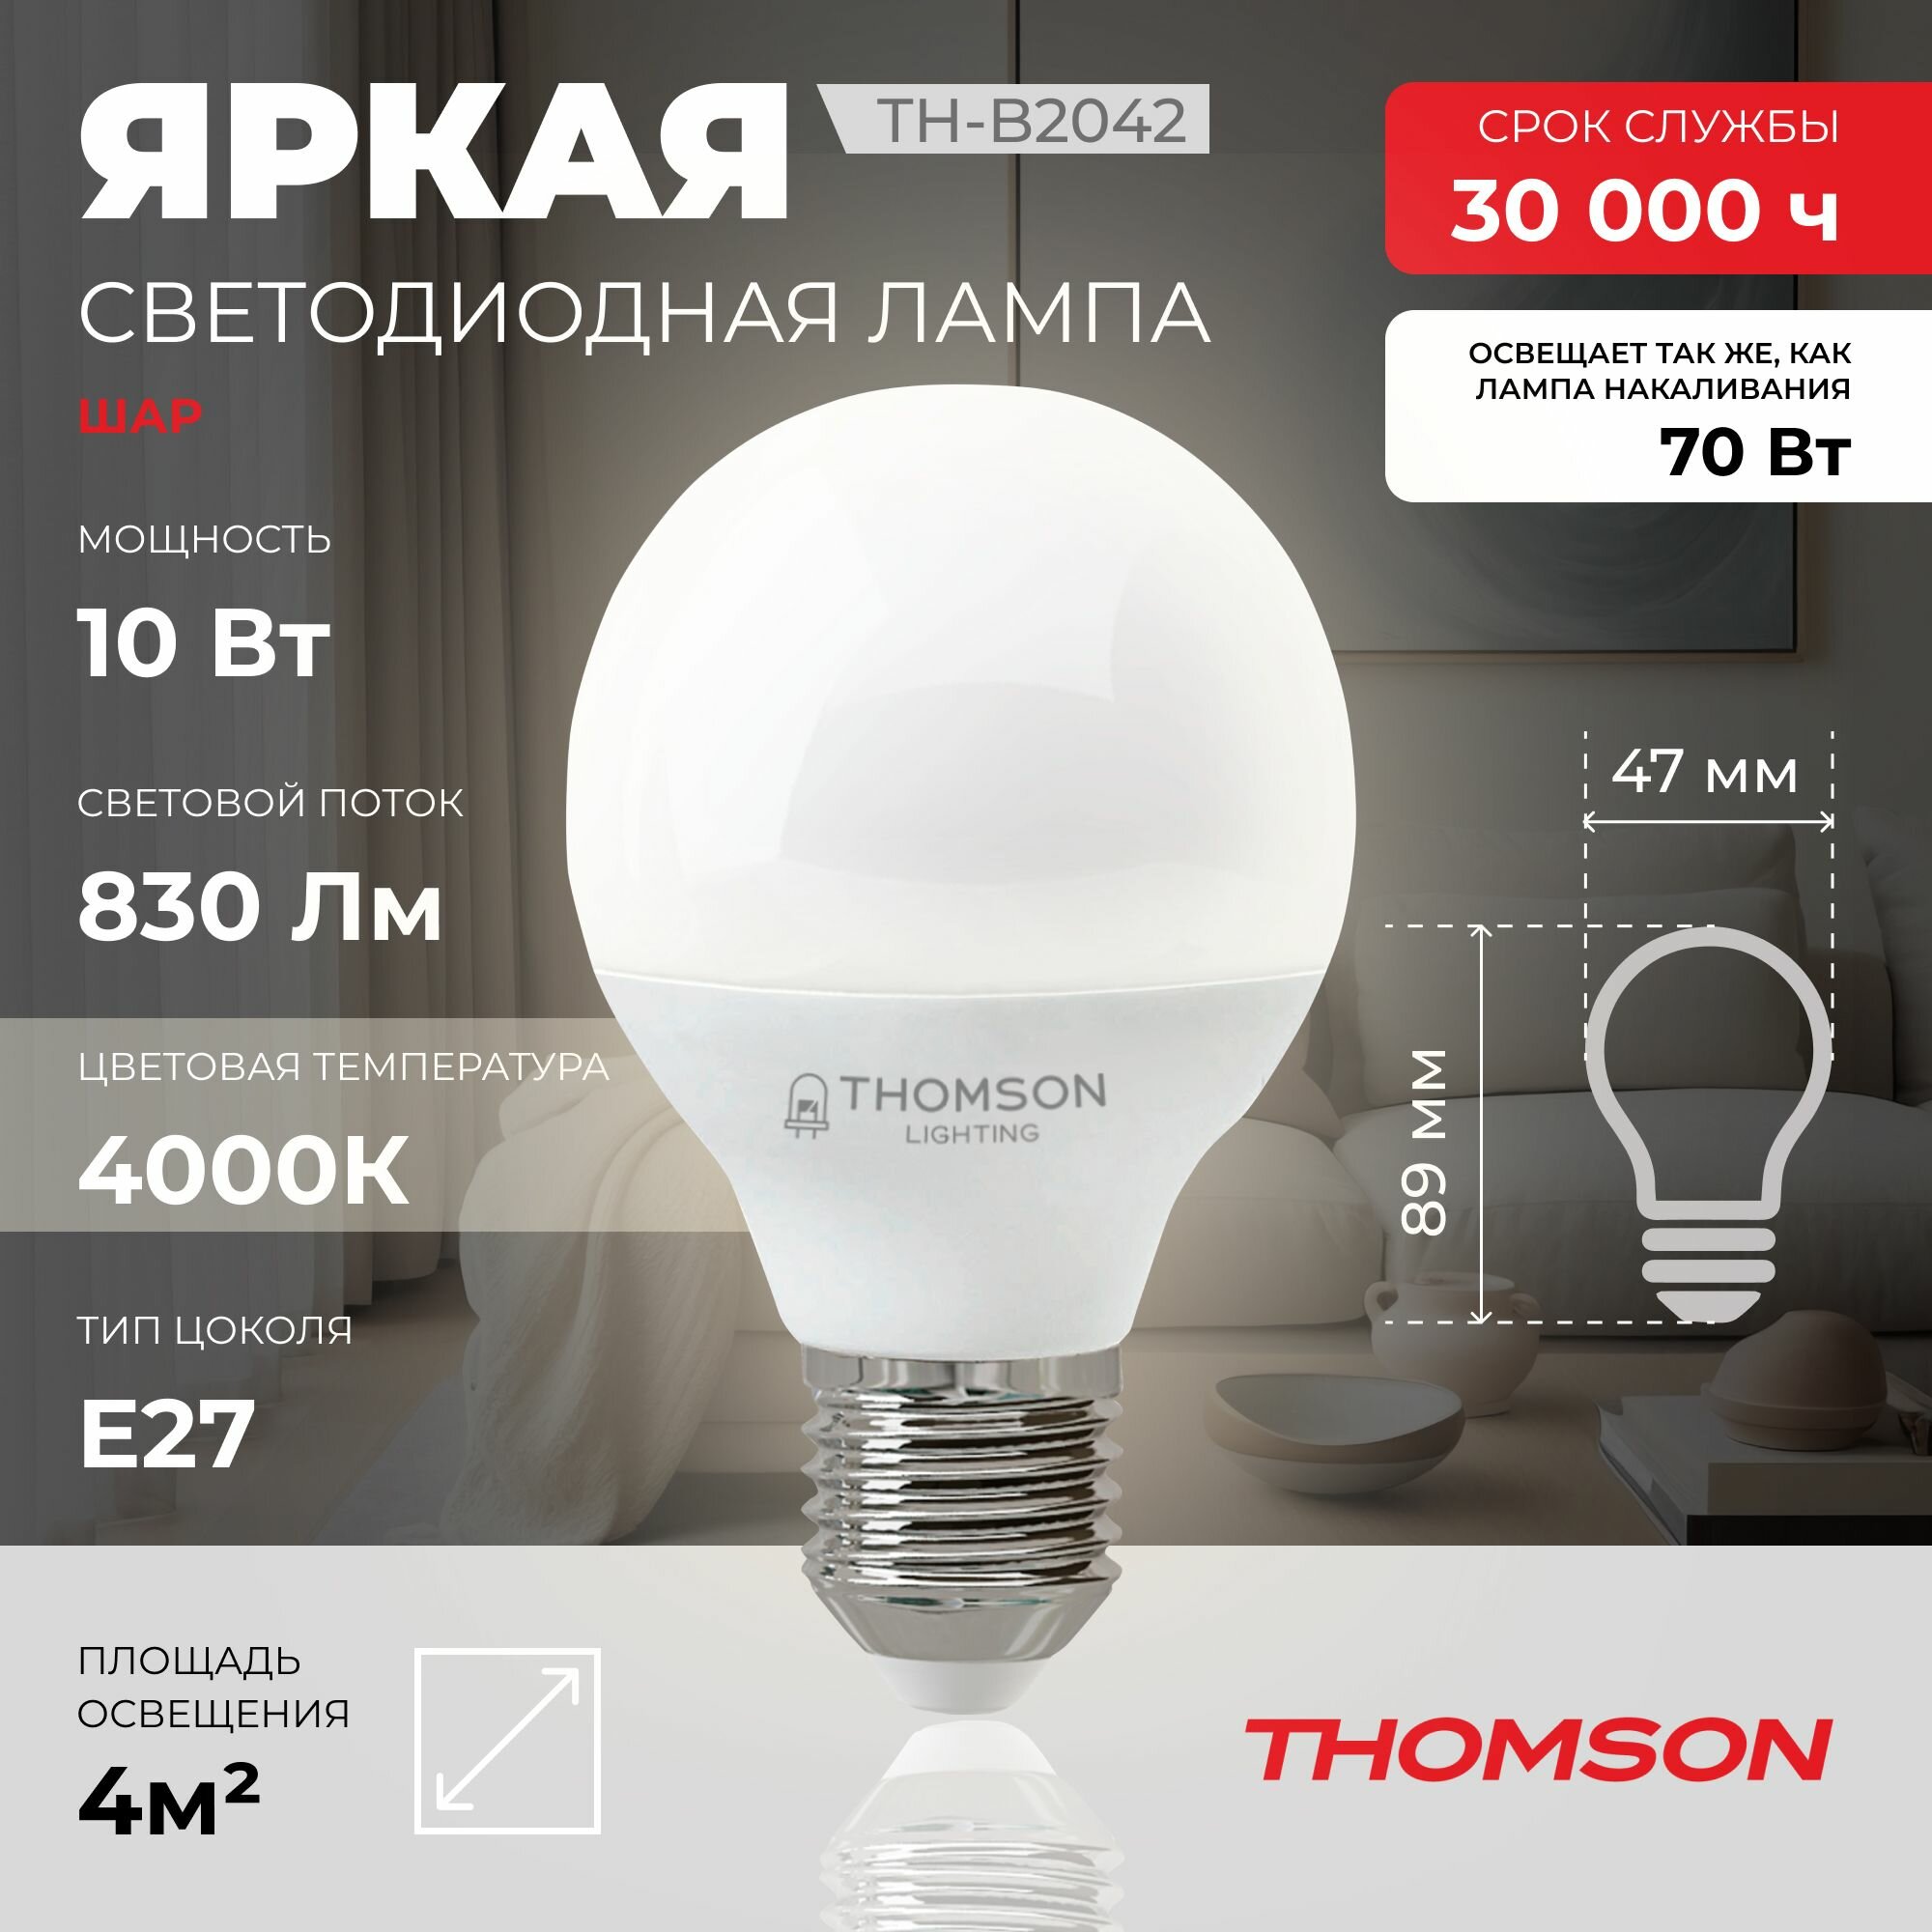 Лампочка Thomson TH-B2042 10 Вт, E27, 4000K, шар, нейтральный белый свет